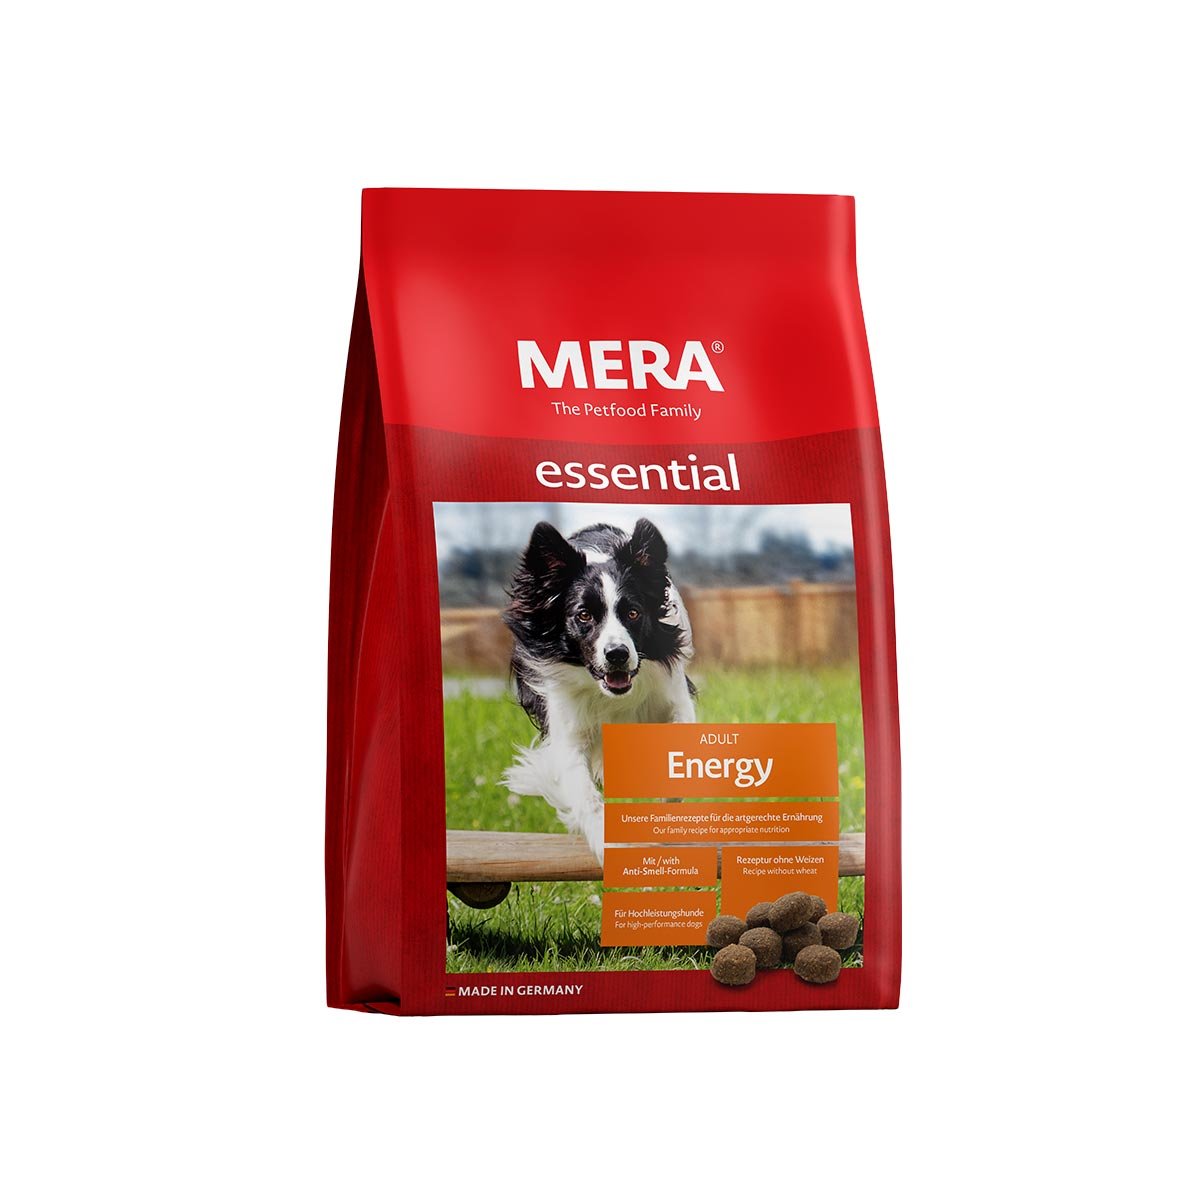 MERA essential Trockenfutter Energy 2×12,5kg